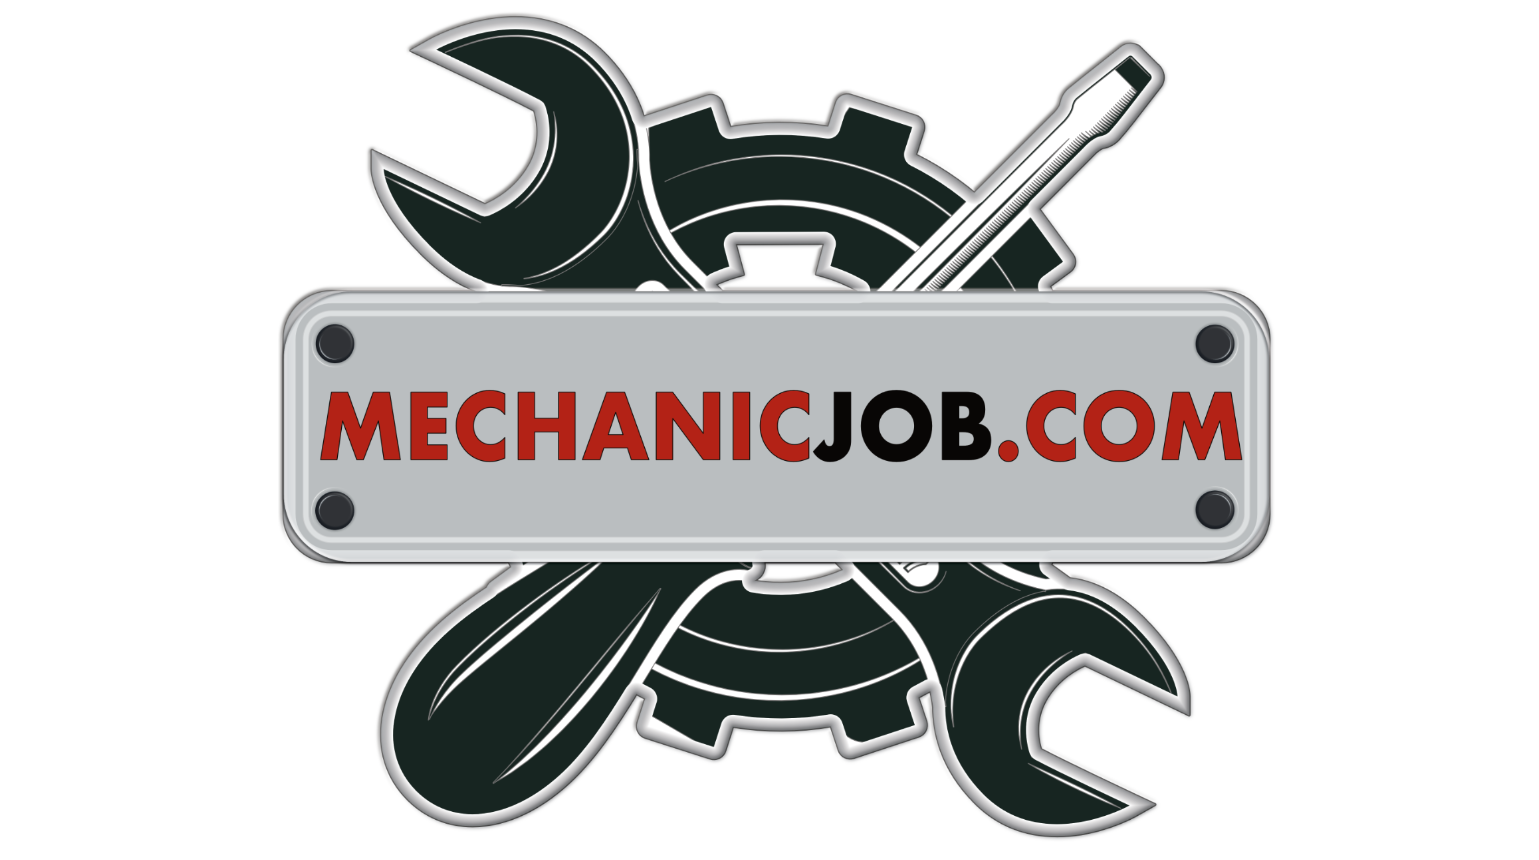 MechanicJob.com